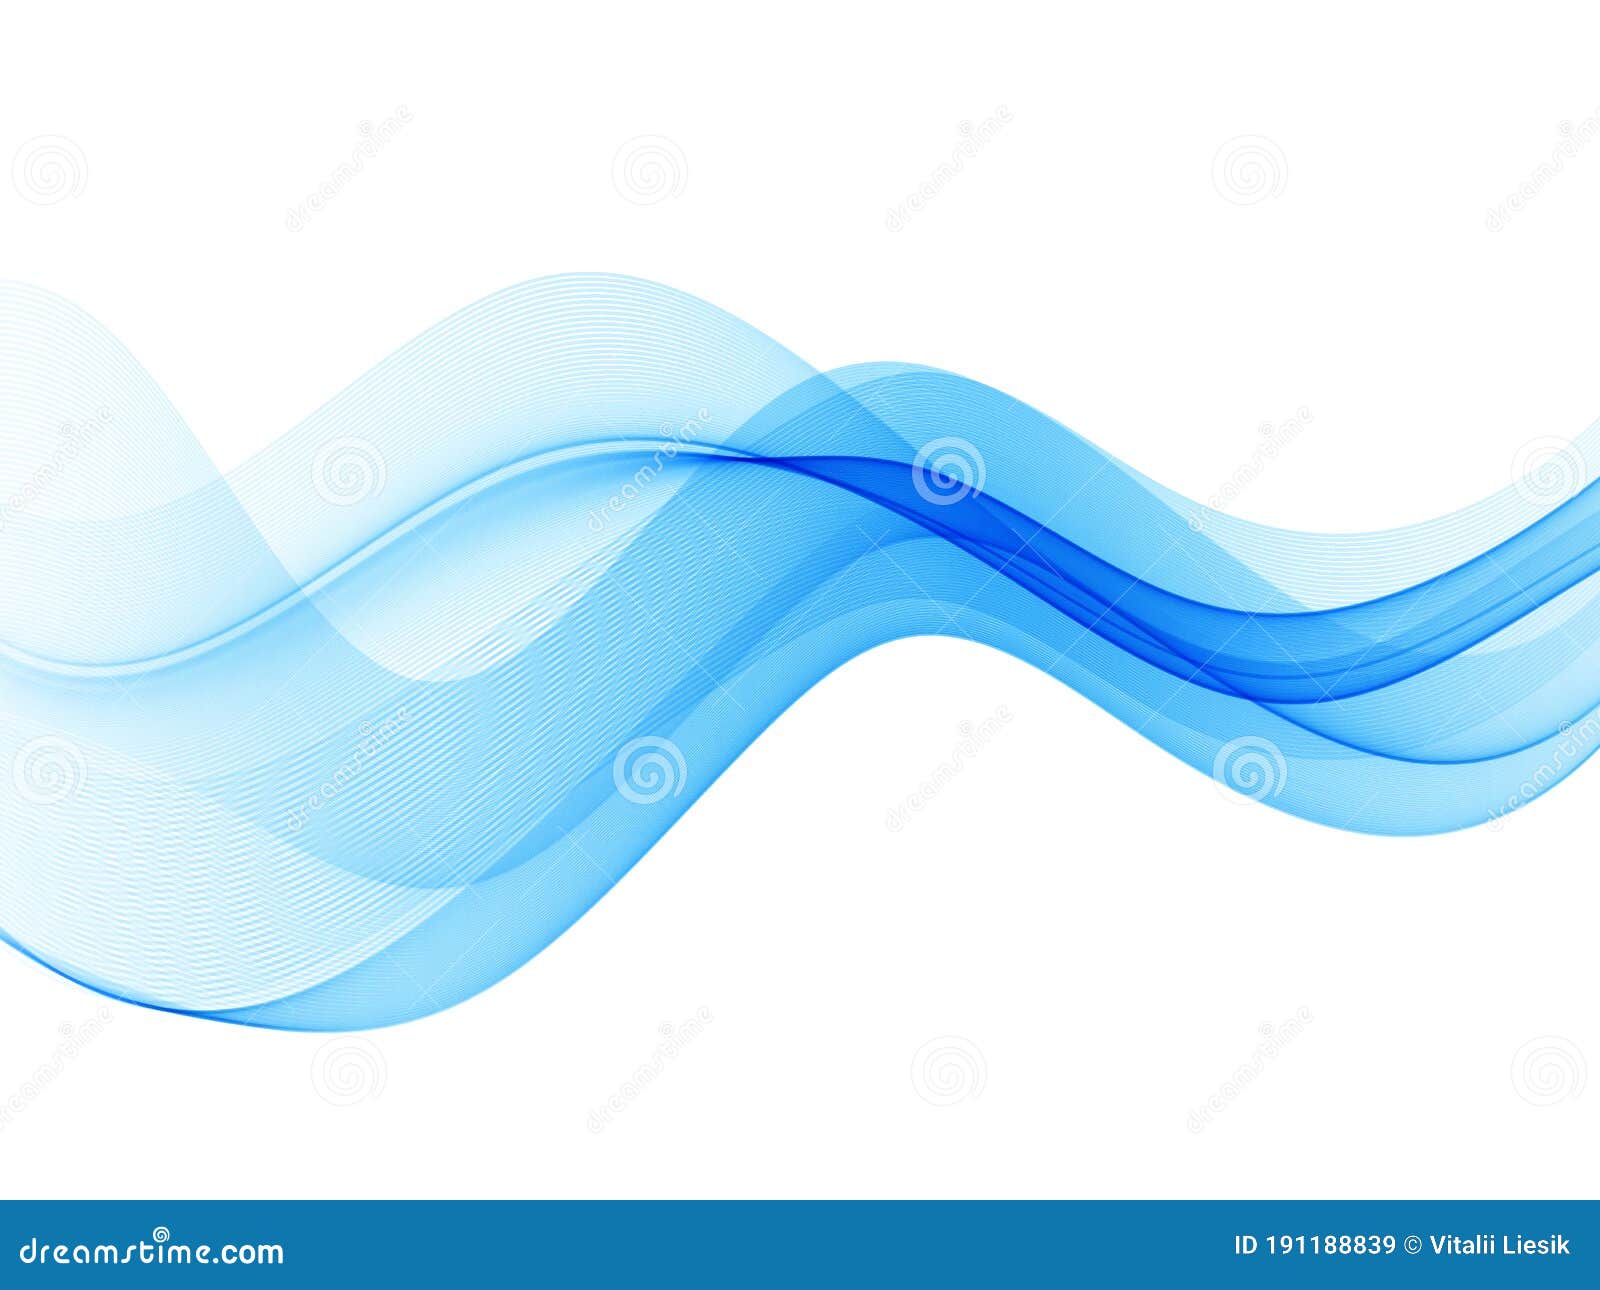 Những đường sóng màu xanh trẻ trung sẽ mang đến một không gian đầy năng lượng và sinh động cho bạn và gia đình.